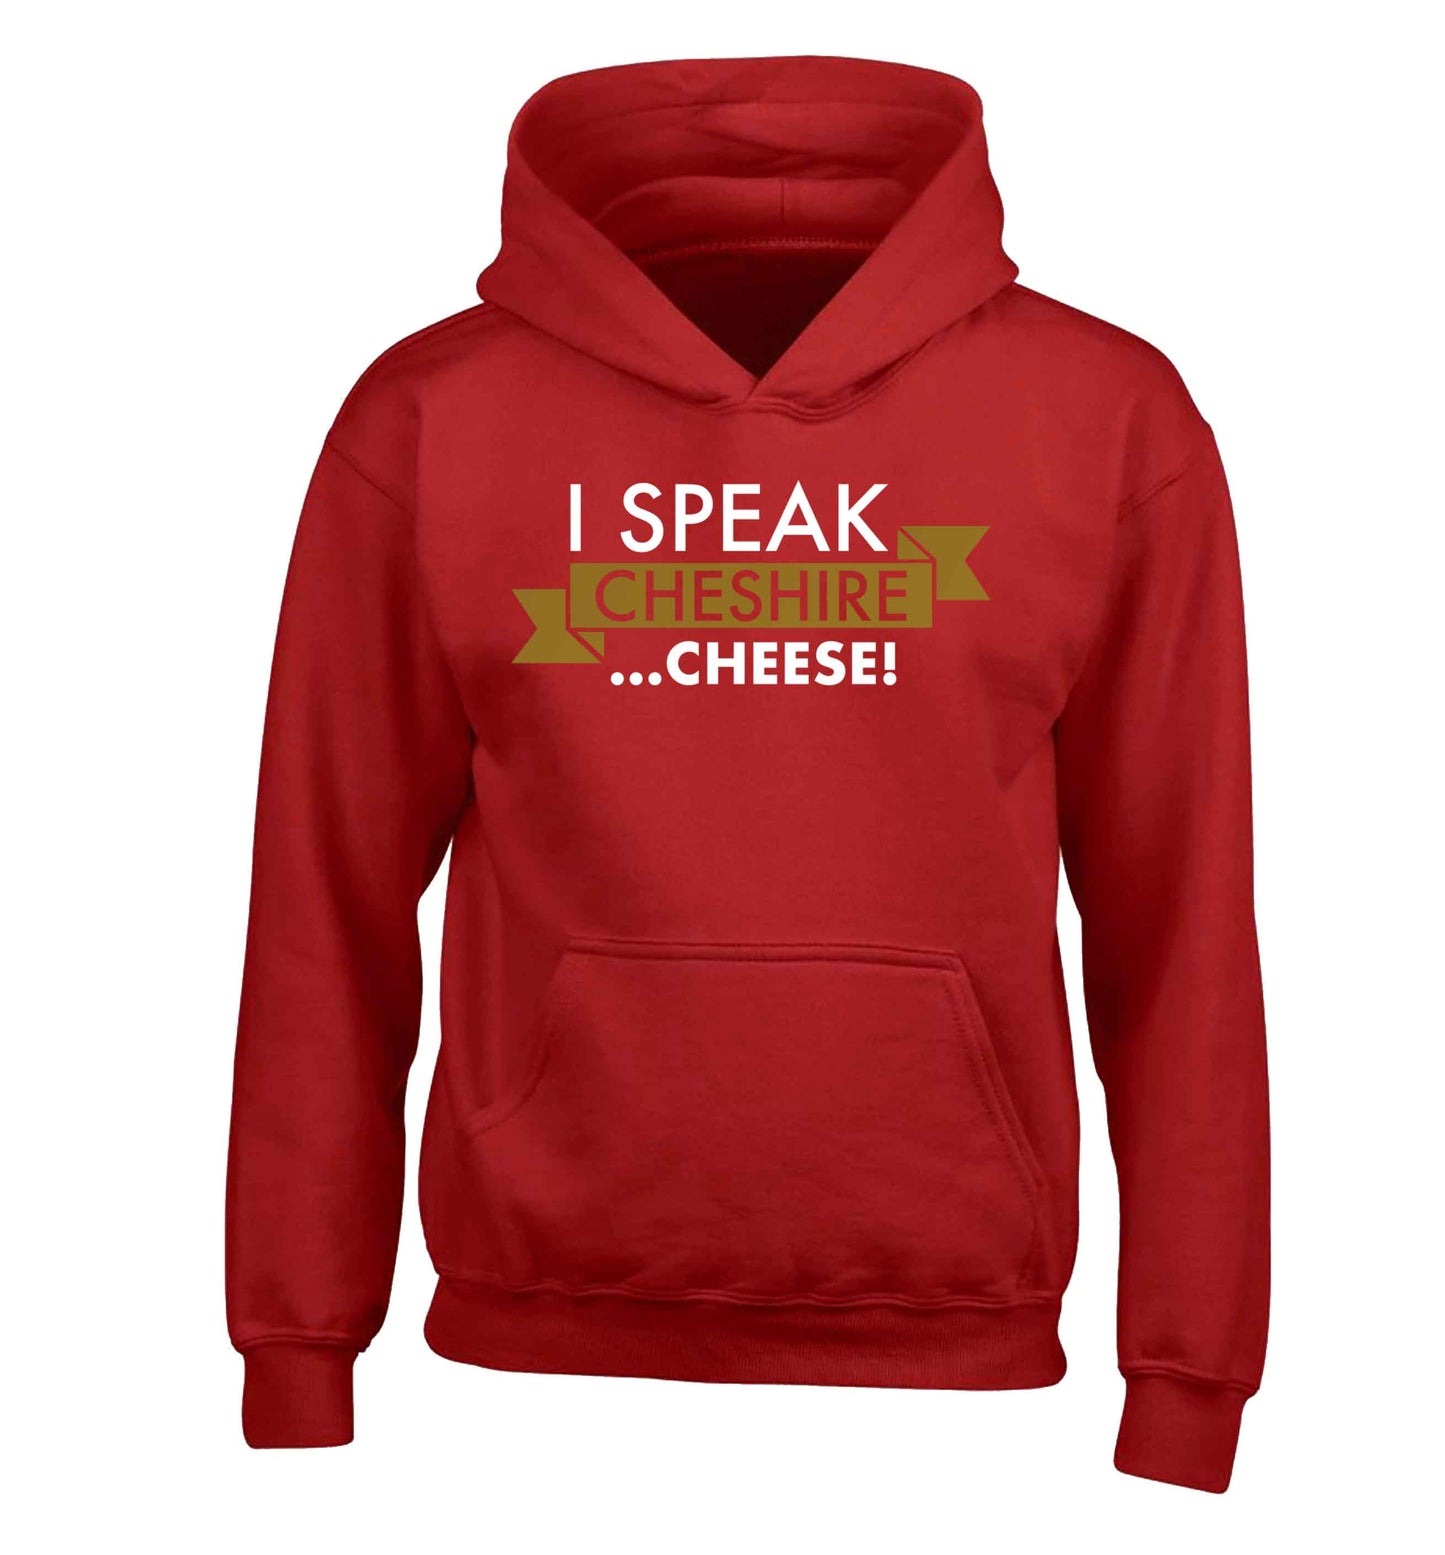 I speak Cheshire cheese children's red hoodie 12-13 Years